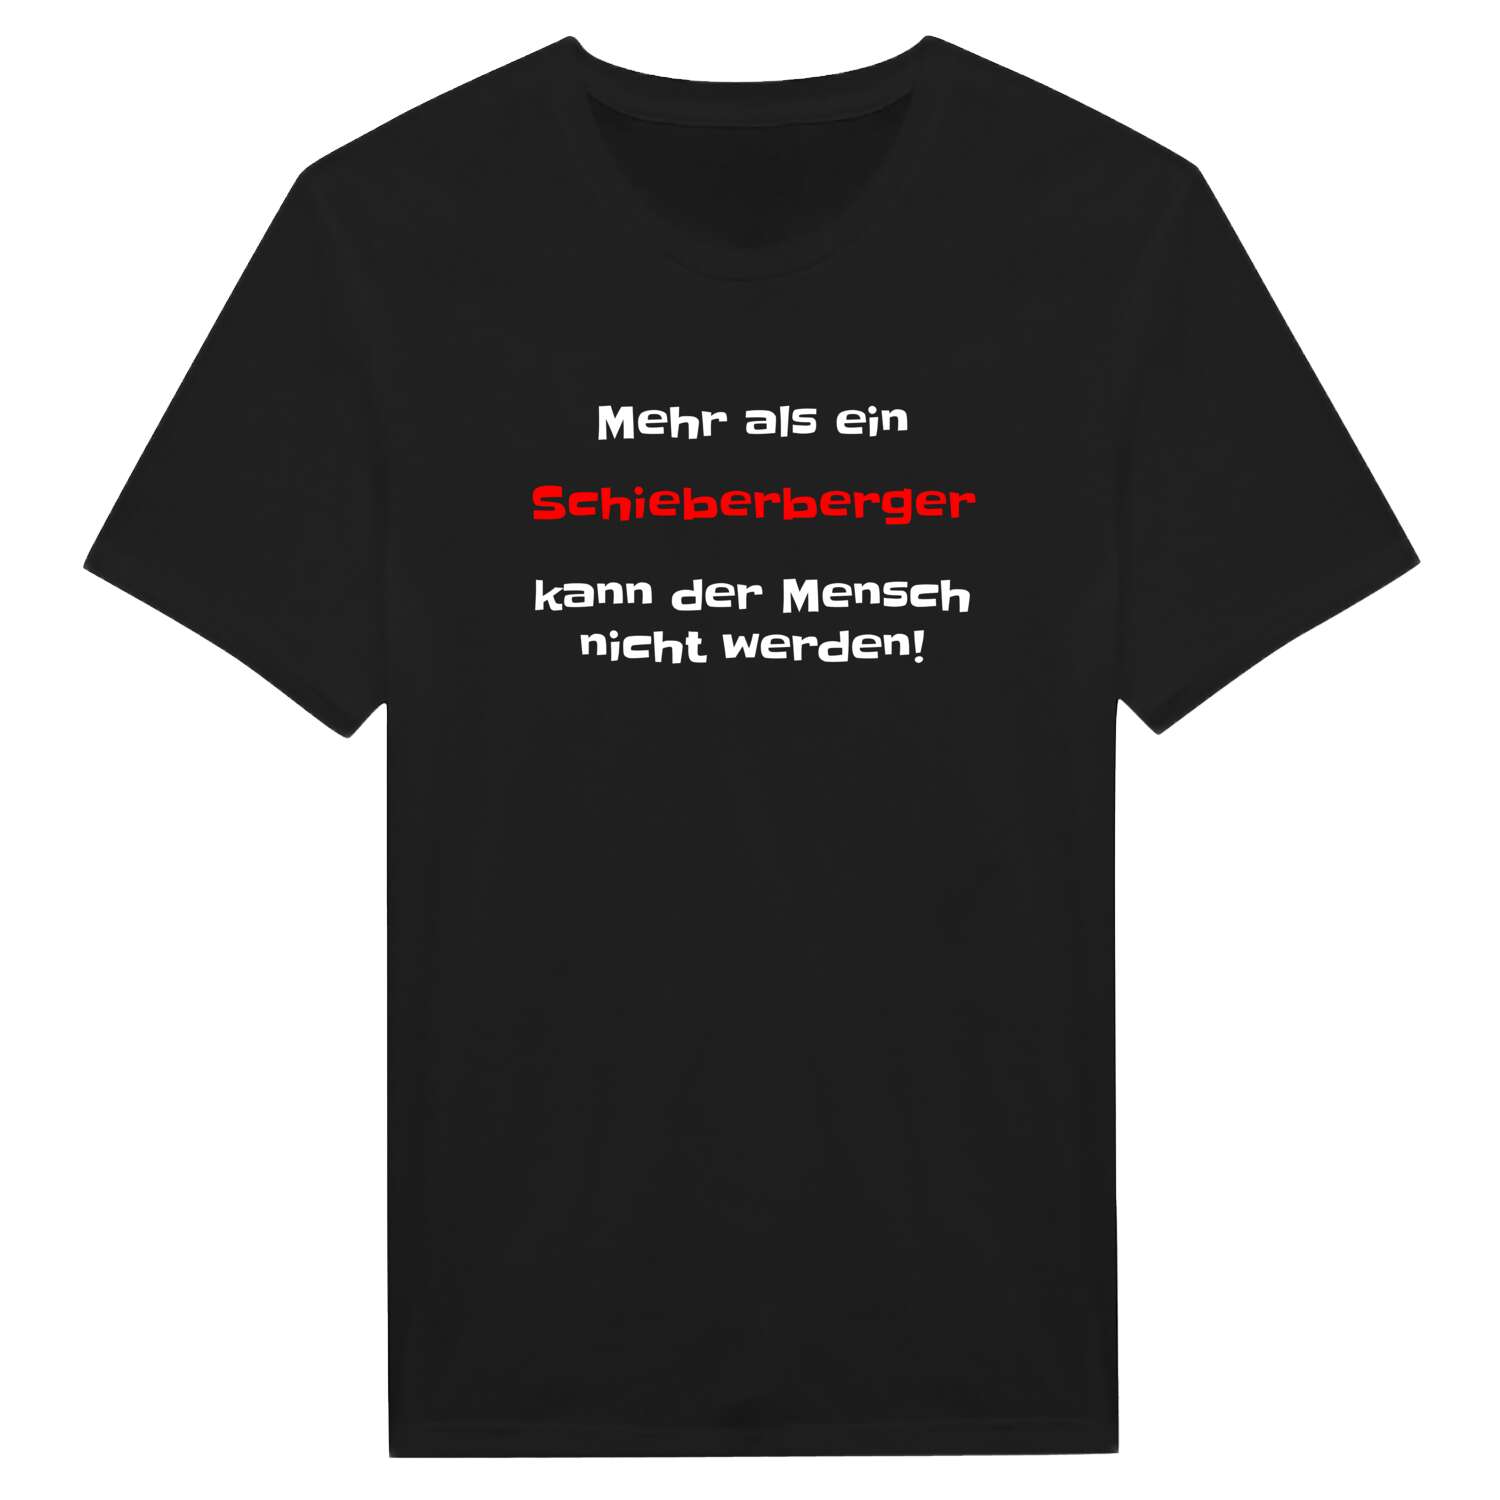 Schieberberg T-Shirt »Mehr als ein«